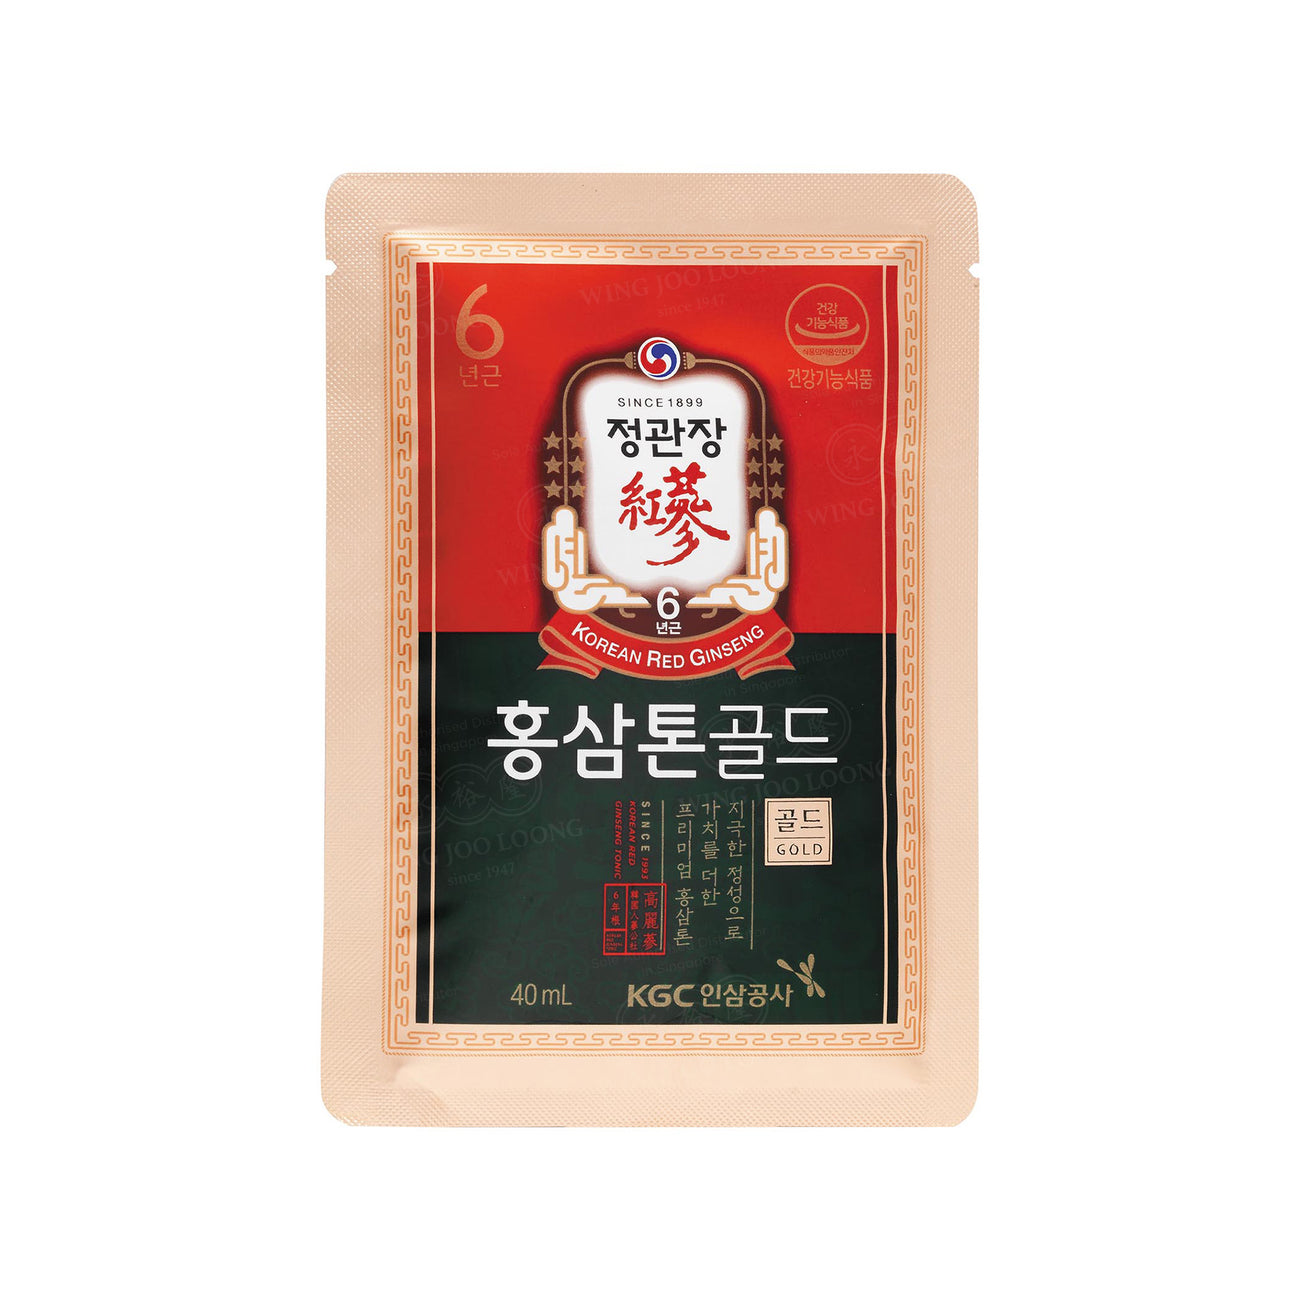 Cheong Kwan Jang Korean Red Ginseng Extract Tonic Gold 高丽参炖 [金]